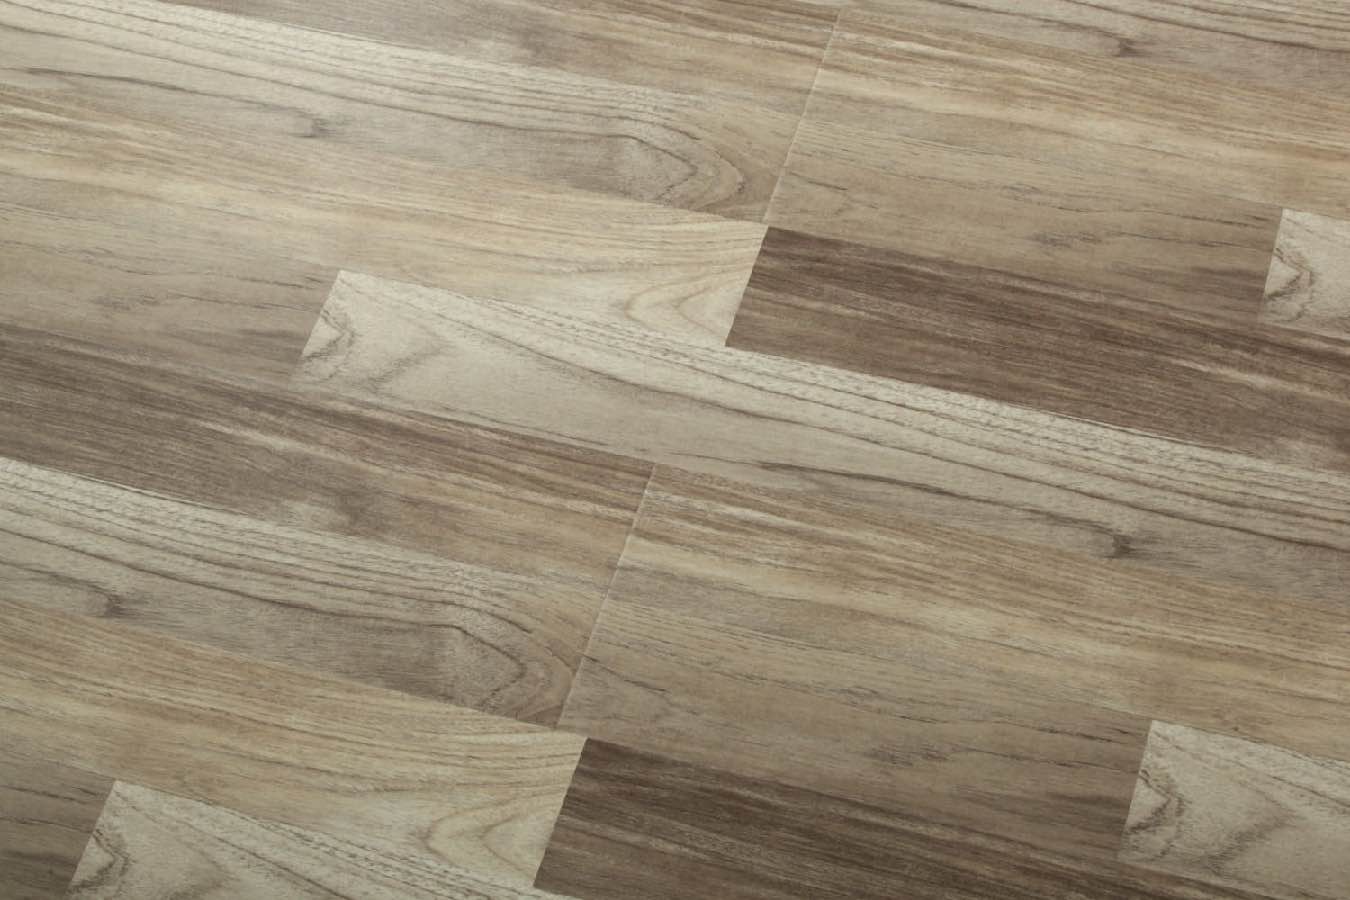 Oak Wood Laminate Flooring (LG624)